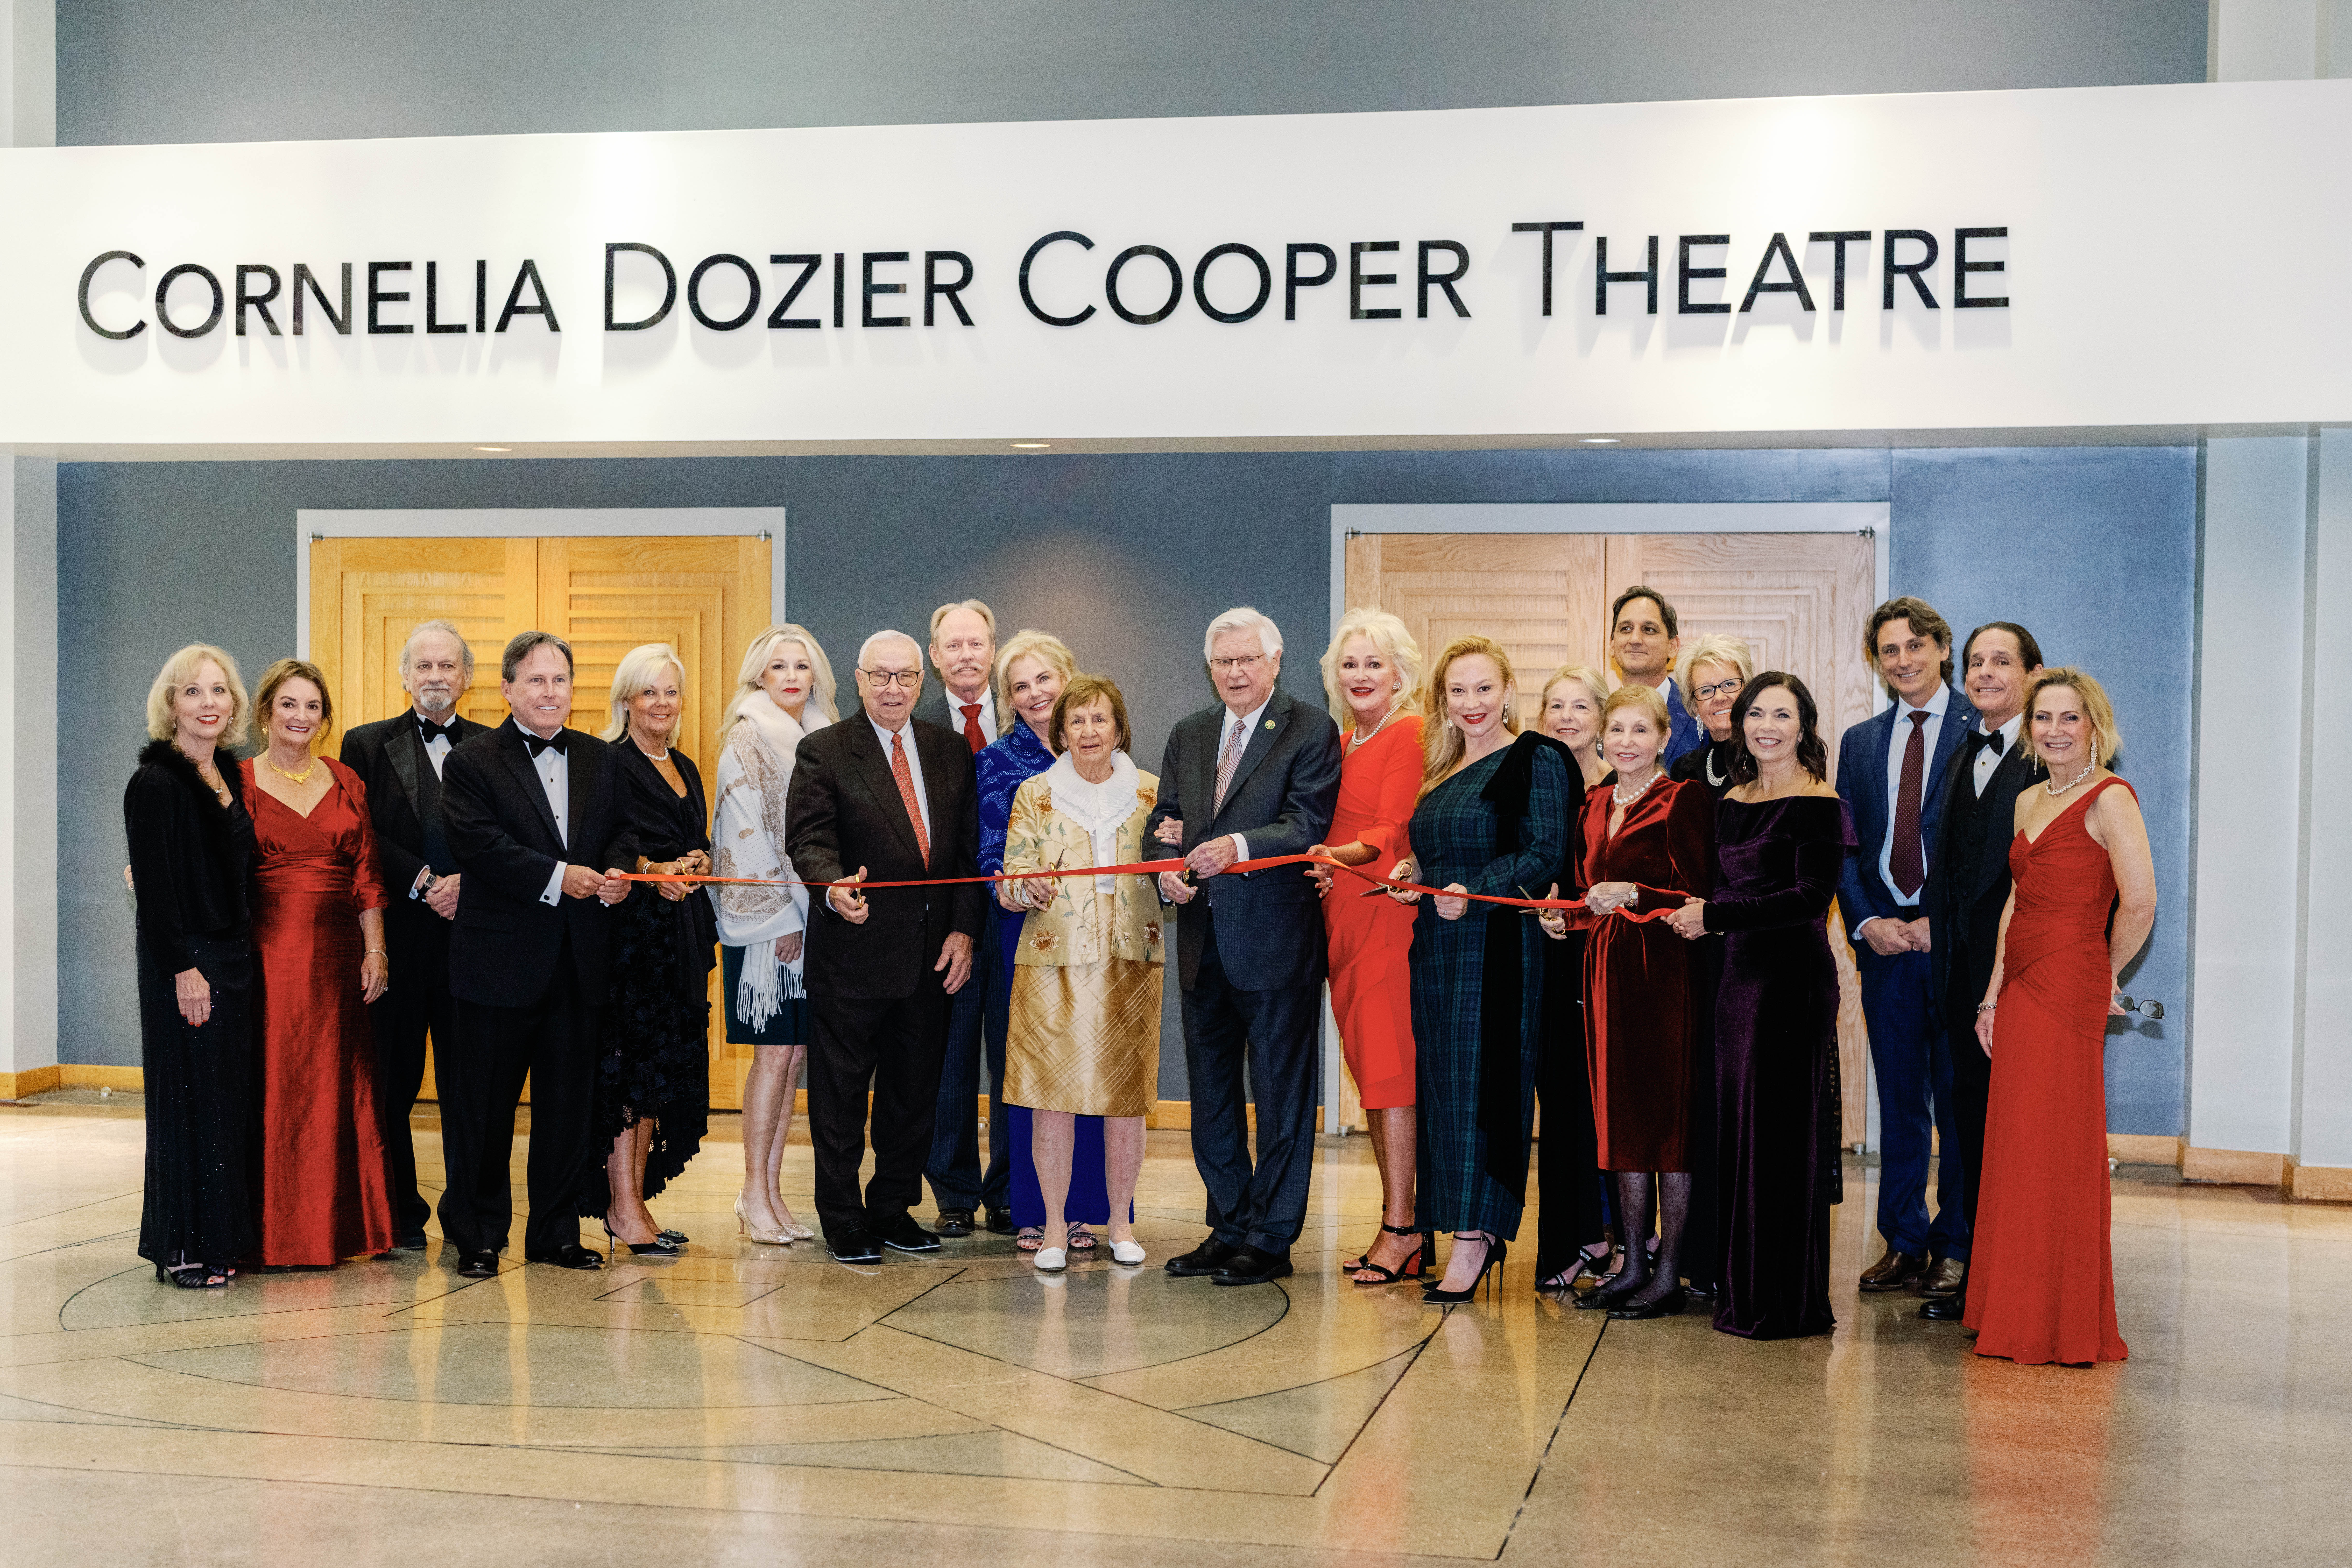 The Center for Rural Development Dedicates Theatre in Honor of Cornelia Dozier Cooper